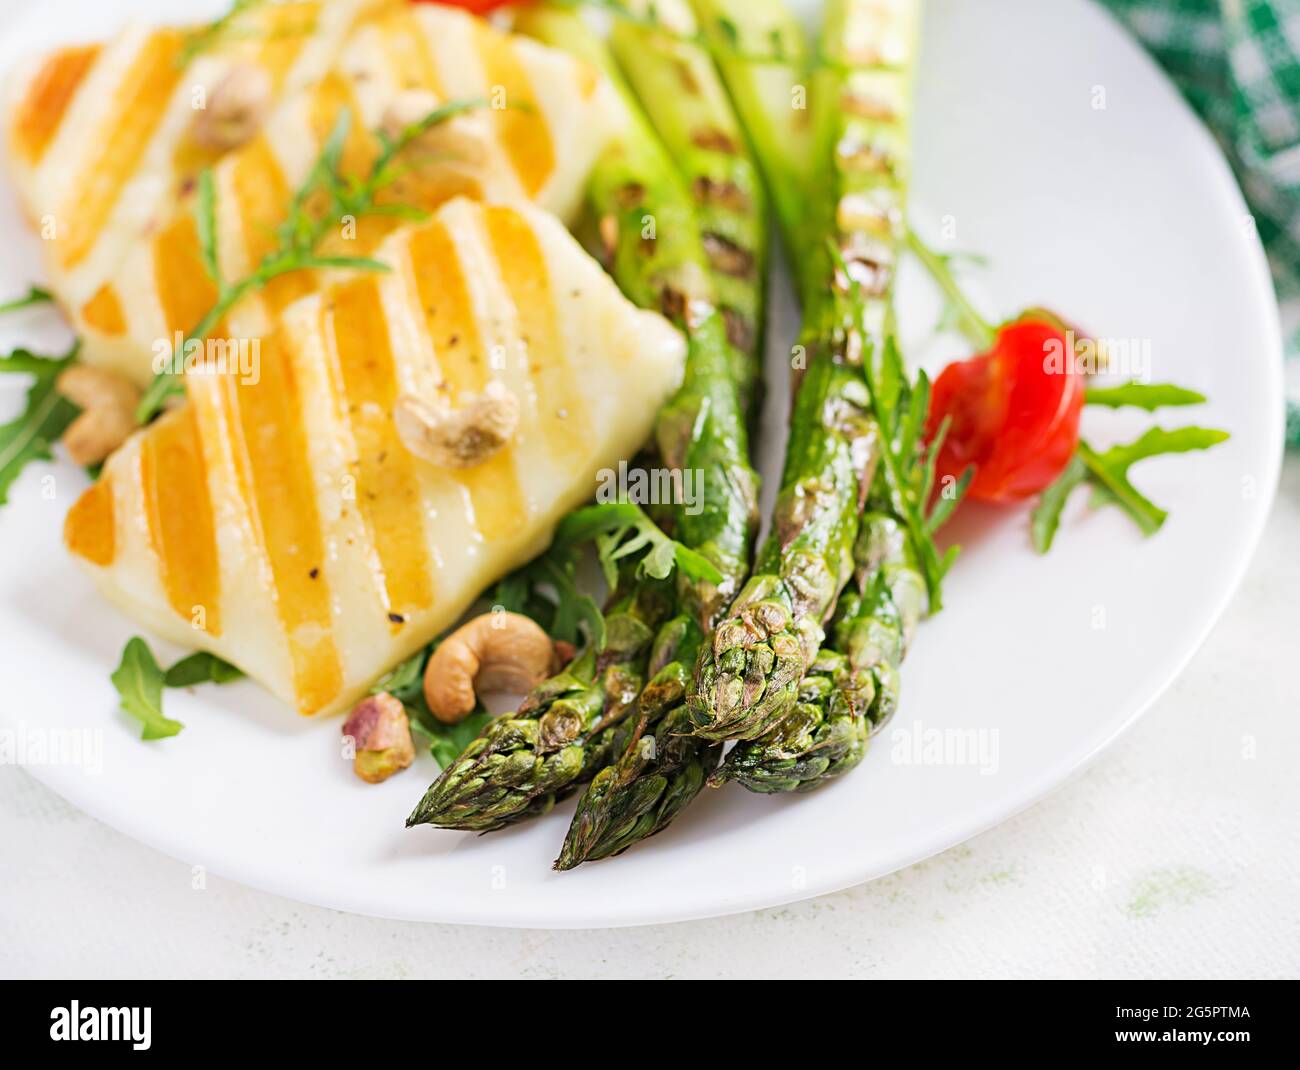 Insalata di formaggio halloumi alla griglia con pomodori e asparagi sul piatto su sfondo chiaro. Cibo vegetariano sano. Foto Stock